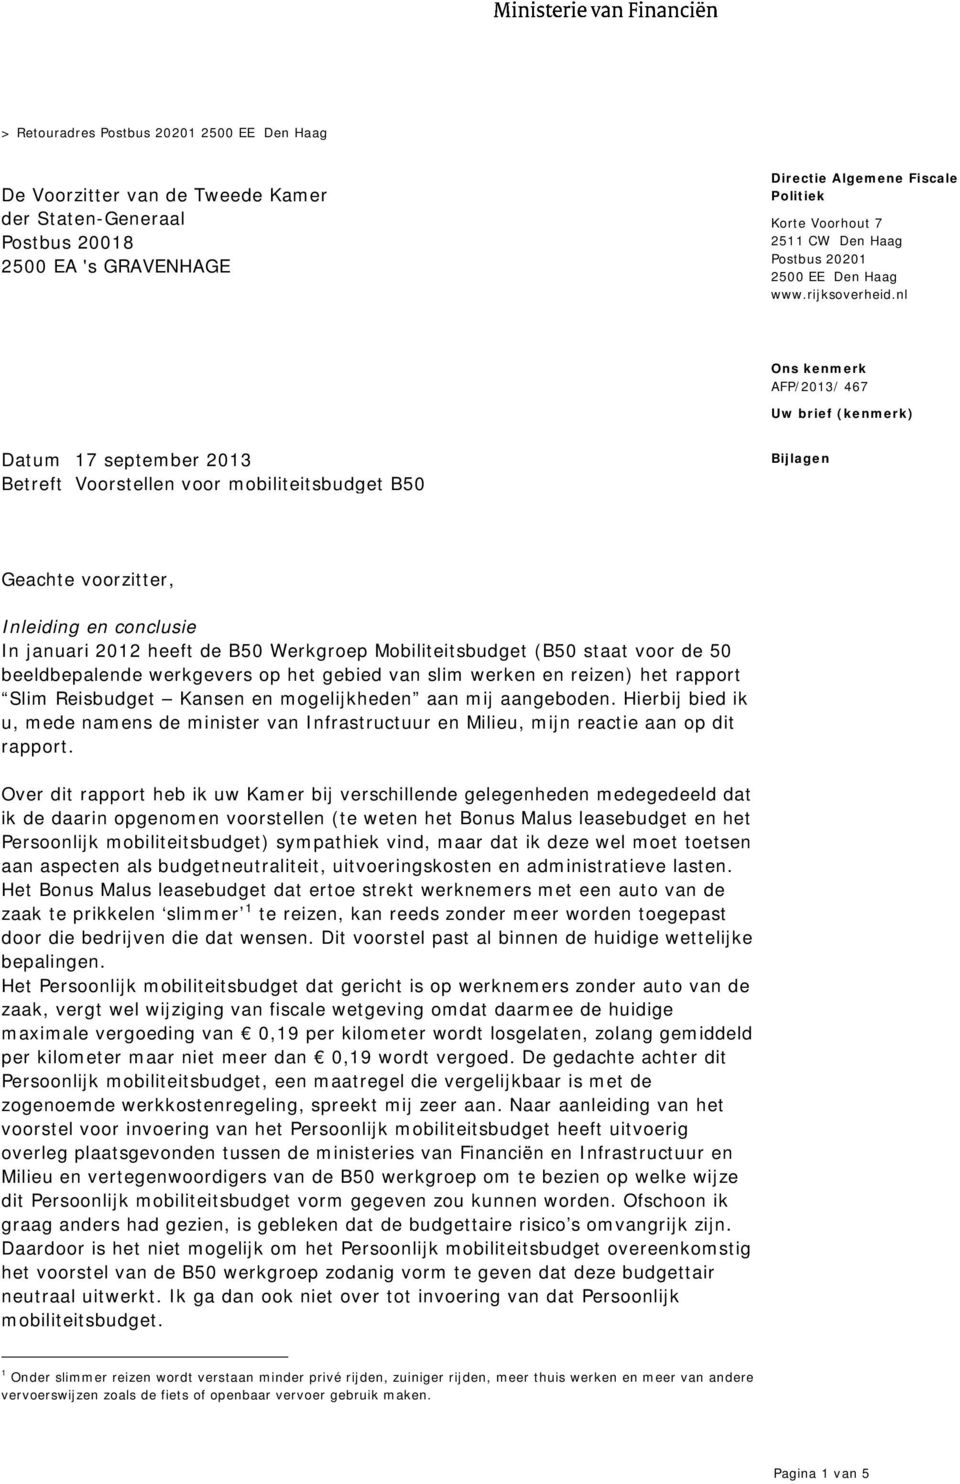 nl Uw brief (kenmerk) Datum 17 september 2013 Betreft Voorstellen voor mobiliteitsbudget B50 Bijlagen Geachte voorzitter, Inleiding en conclusie In januari 2012 heeft de B50 Werkgroep